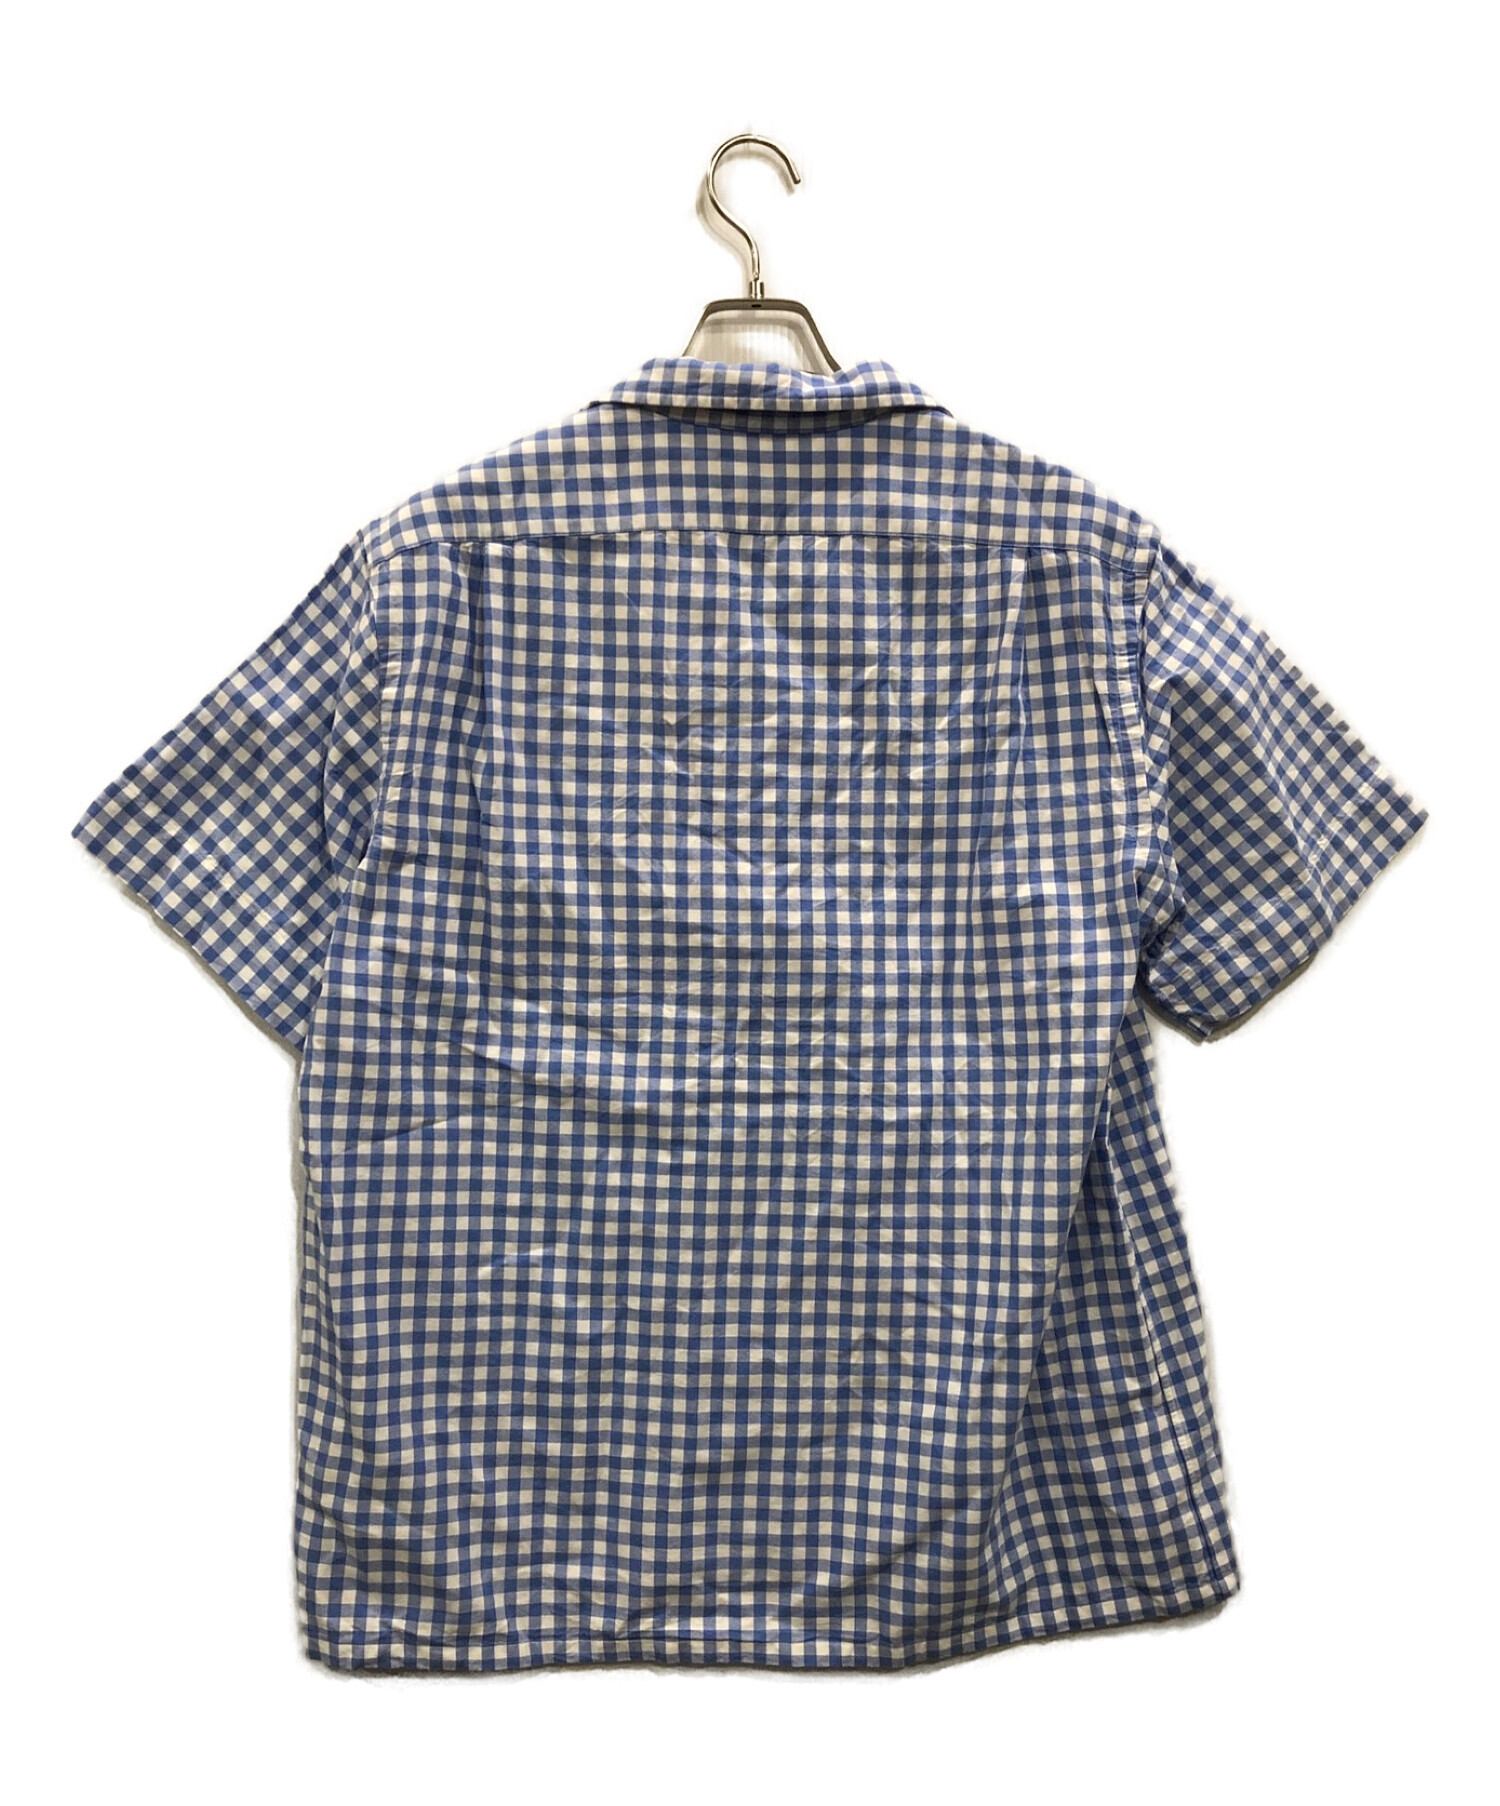 POLO RALPH LAUREN (ポロ・ラルフローレン) オープンカラーギンガムチェックシャツ ホワイト×ブルー サイズ:L